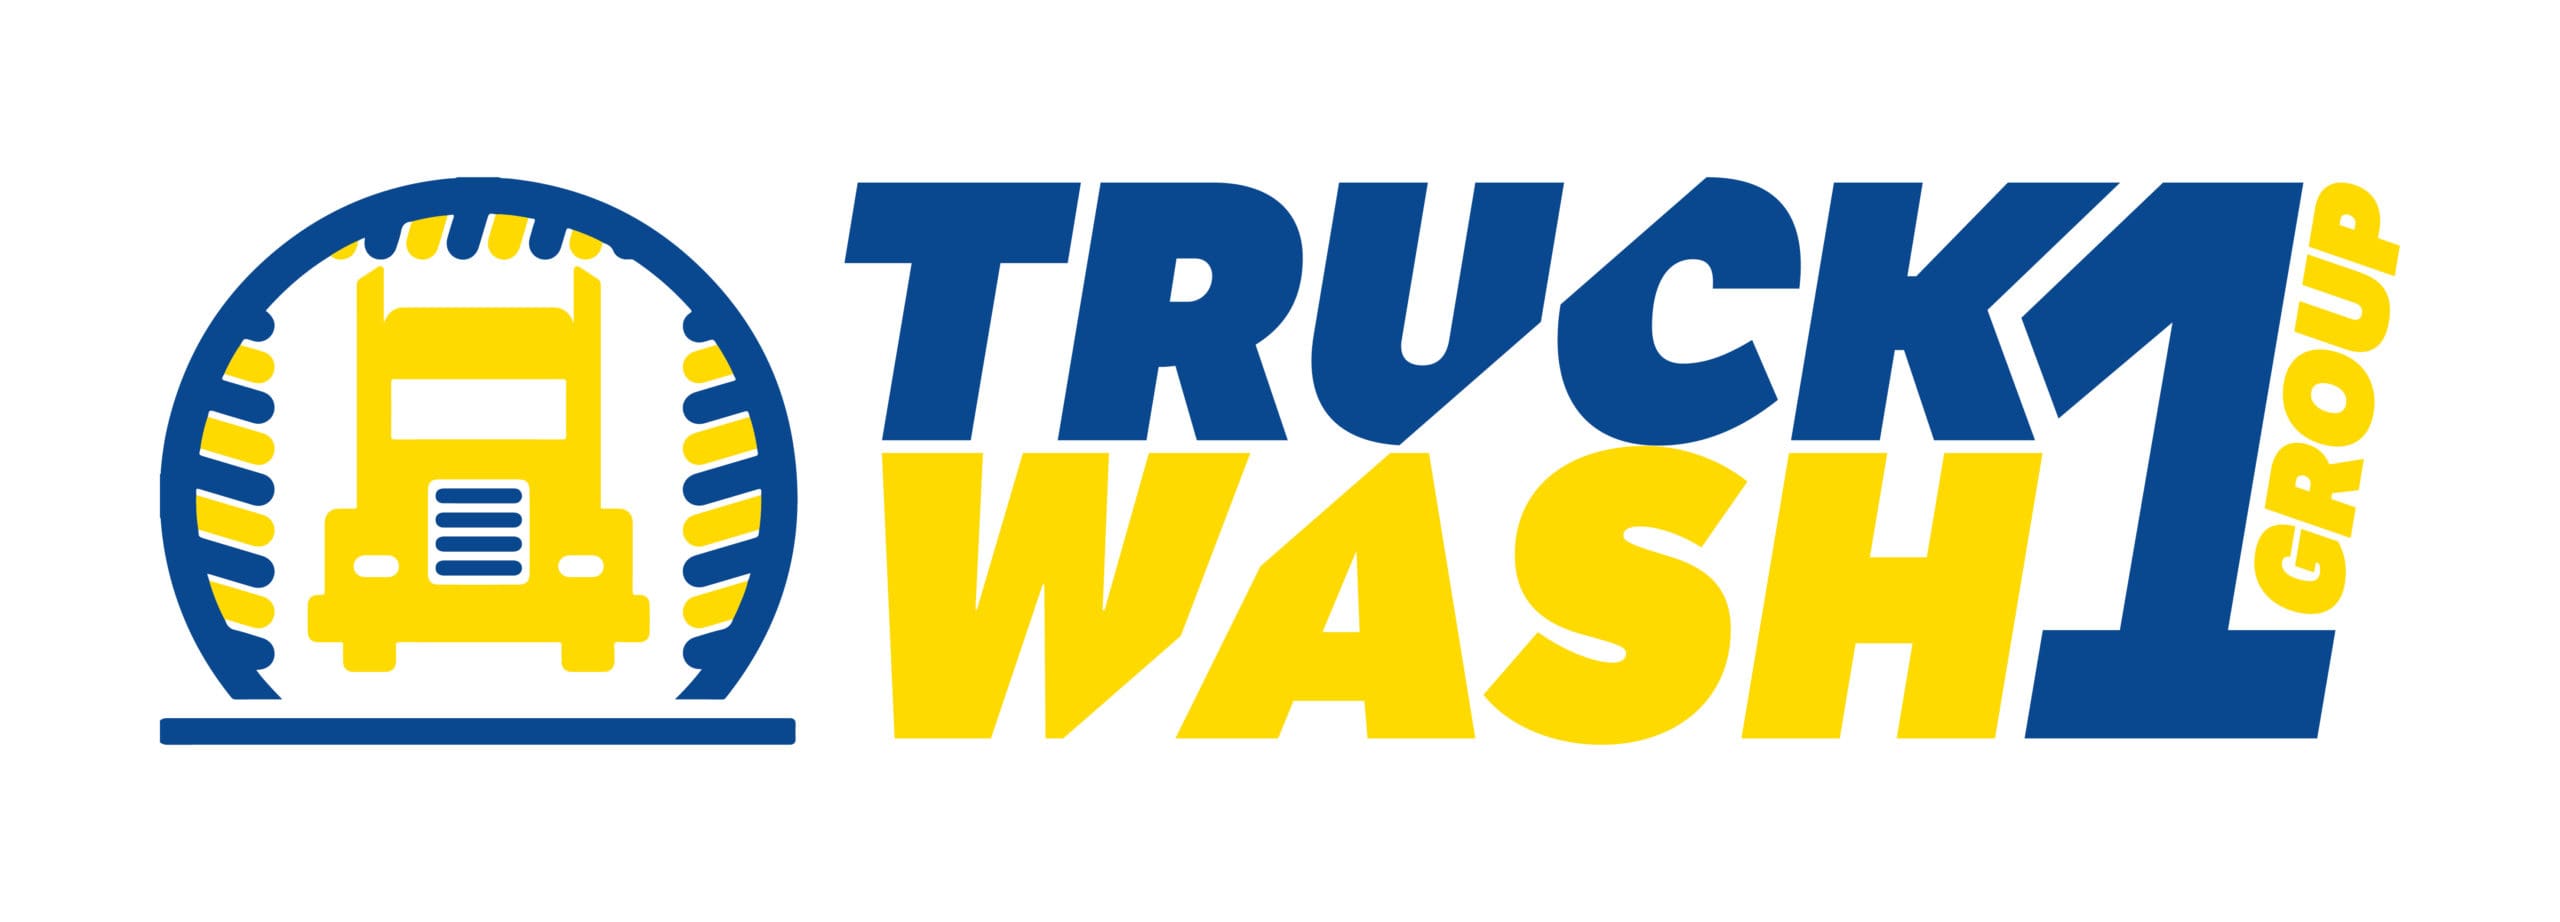 Truckinn93 T-shirt – #Wassen heeft altijd zin